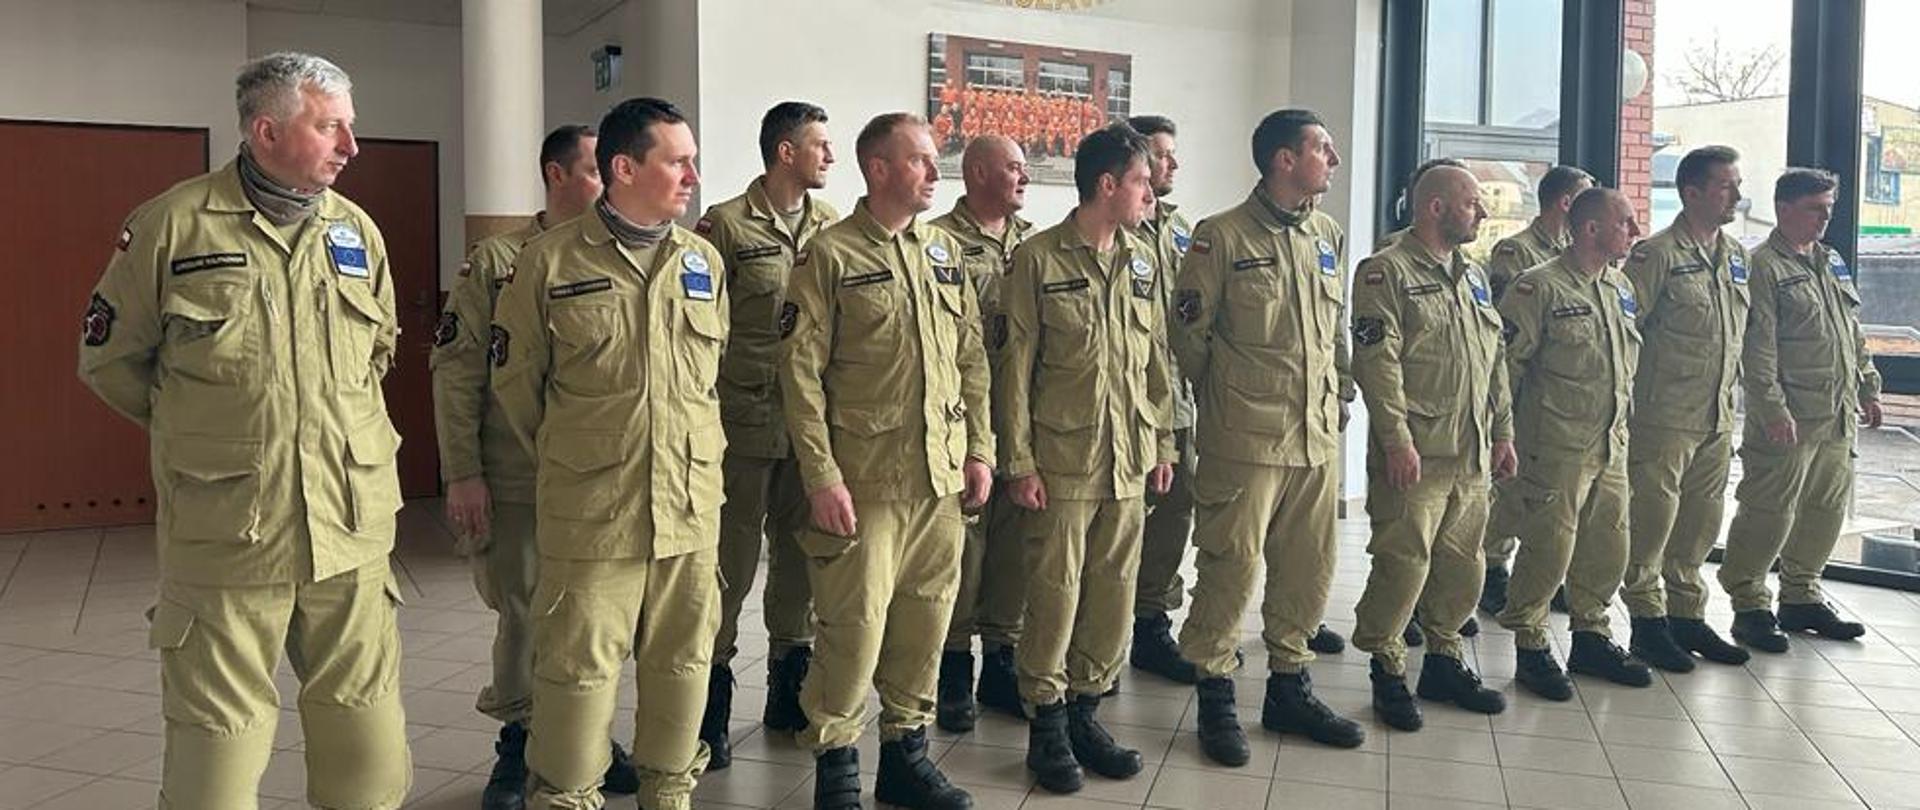 Grupa Poszukiwawczo - Ratownicza JRG 15 Warszawa i ratownicy ci brali udział w misji ratowniczej w Turcji